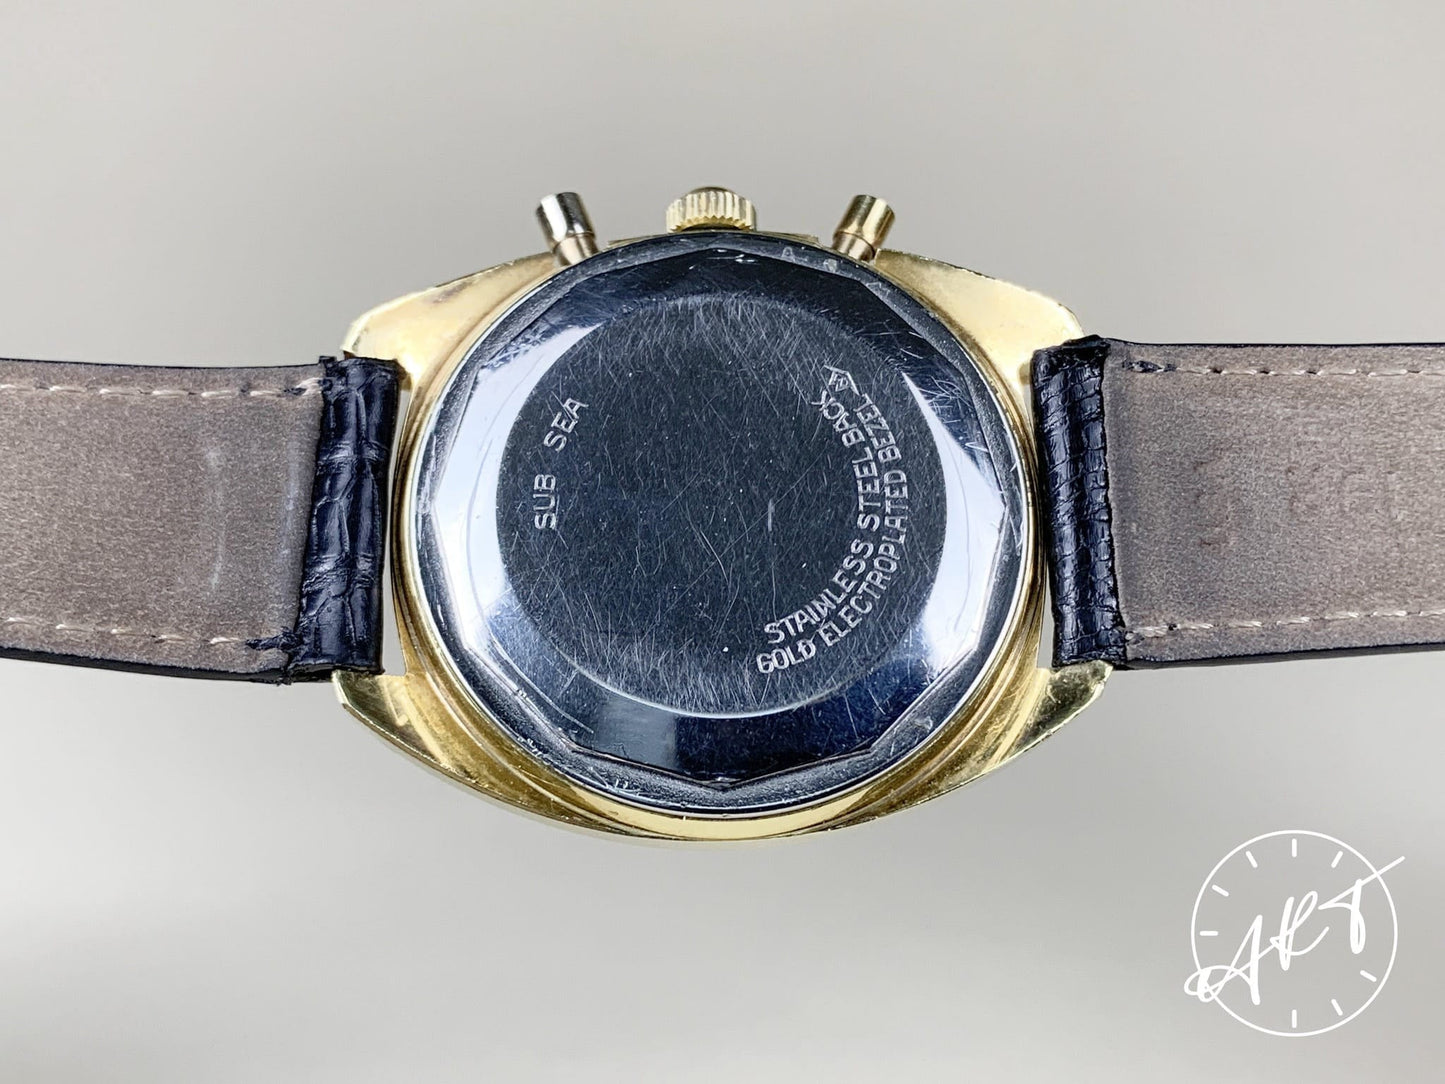 Vintage Movado Datron El Primero Panda Dial Gold Plated & SS Watch HS360